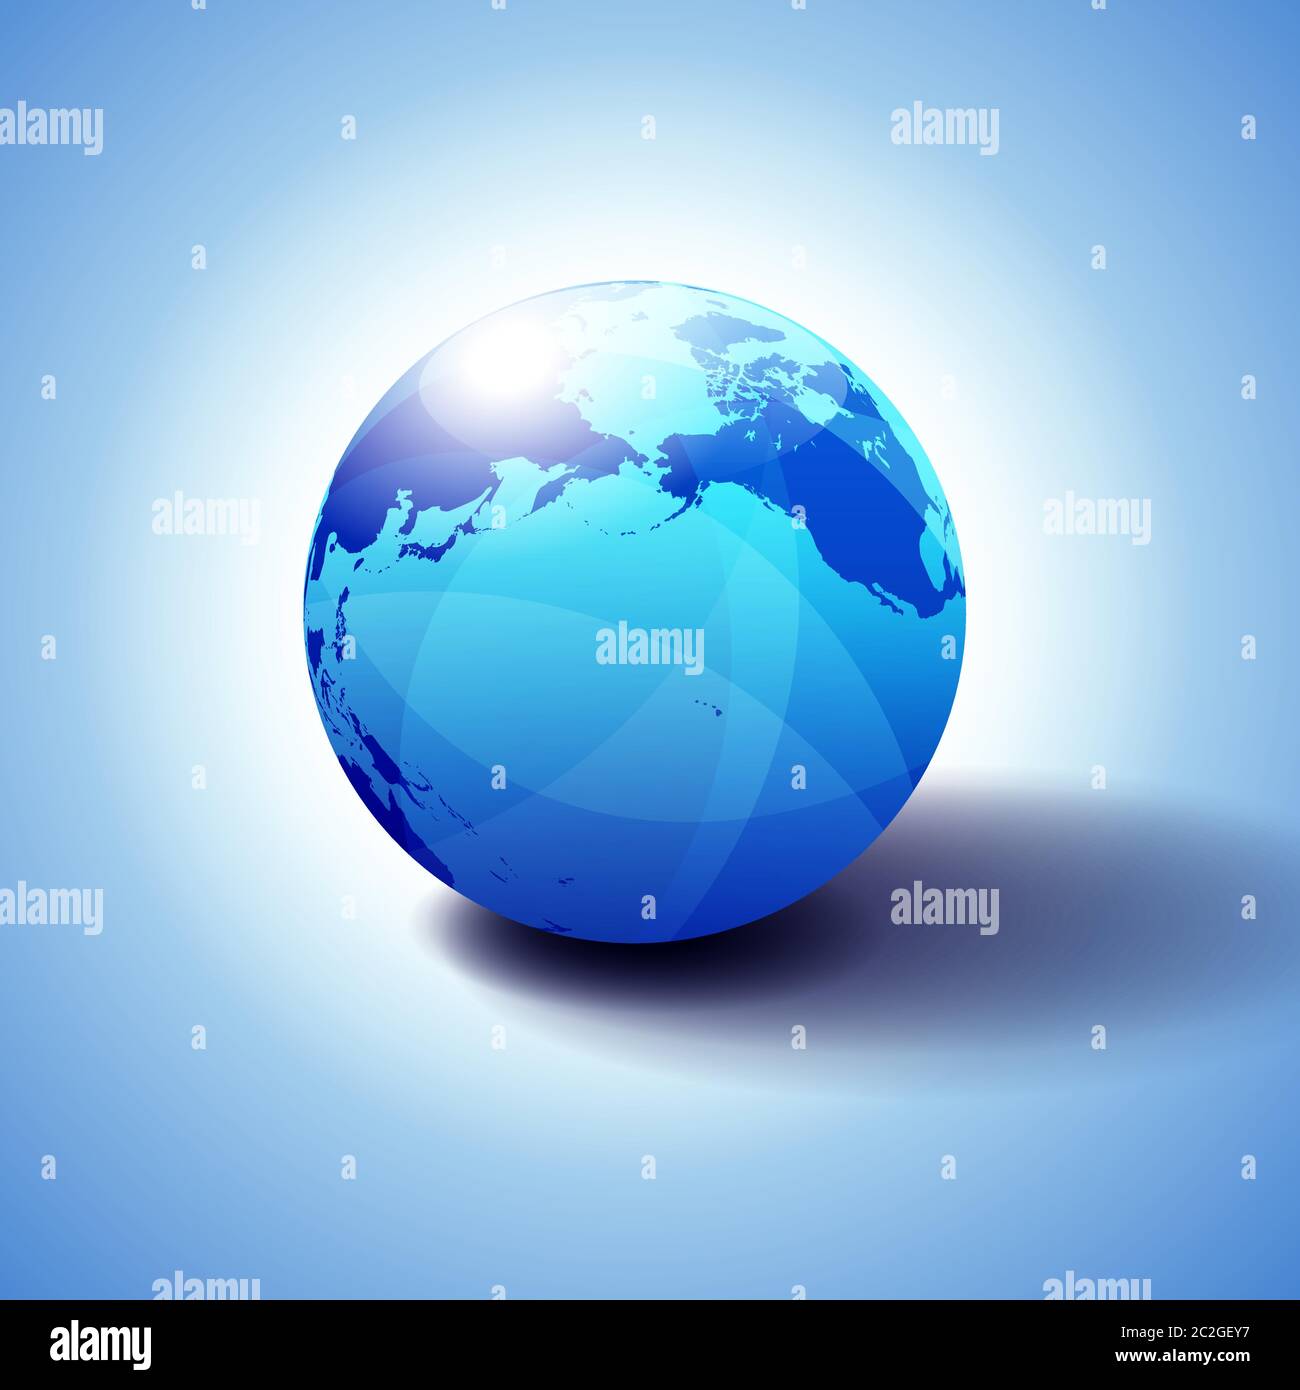 Pacific Rim Amérique du Nord, Canada, Sibérie Russie et Hawaï arrière-plan avec icône Globe illustration 3D, sphère brillante et brillante avec carte globale Illustration de Vecteur